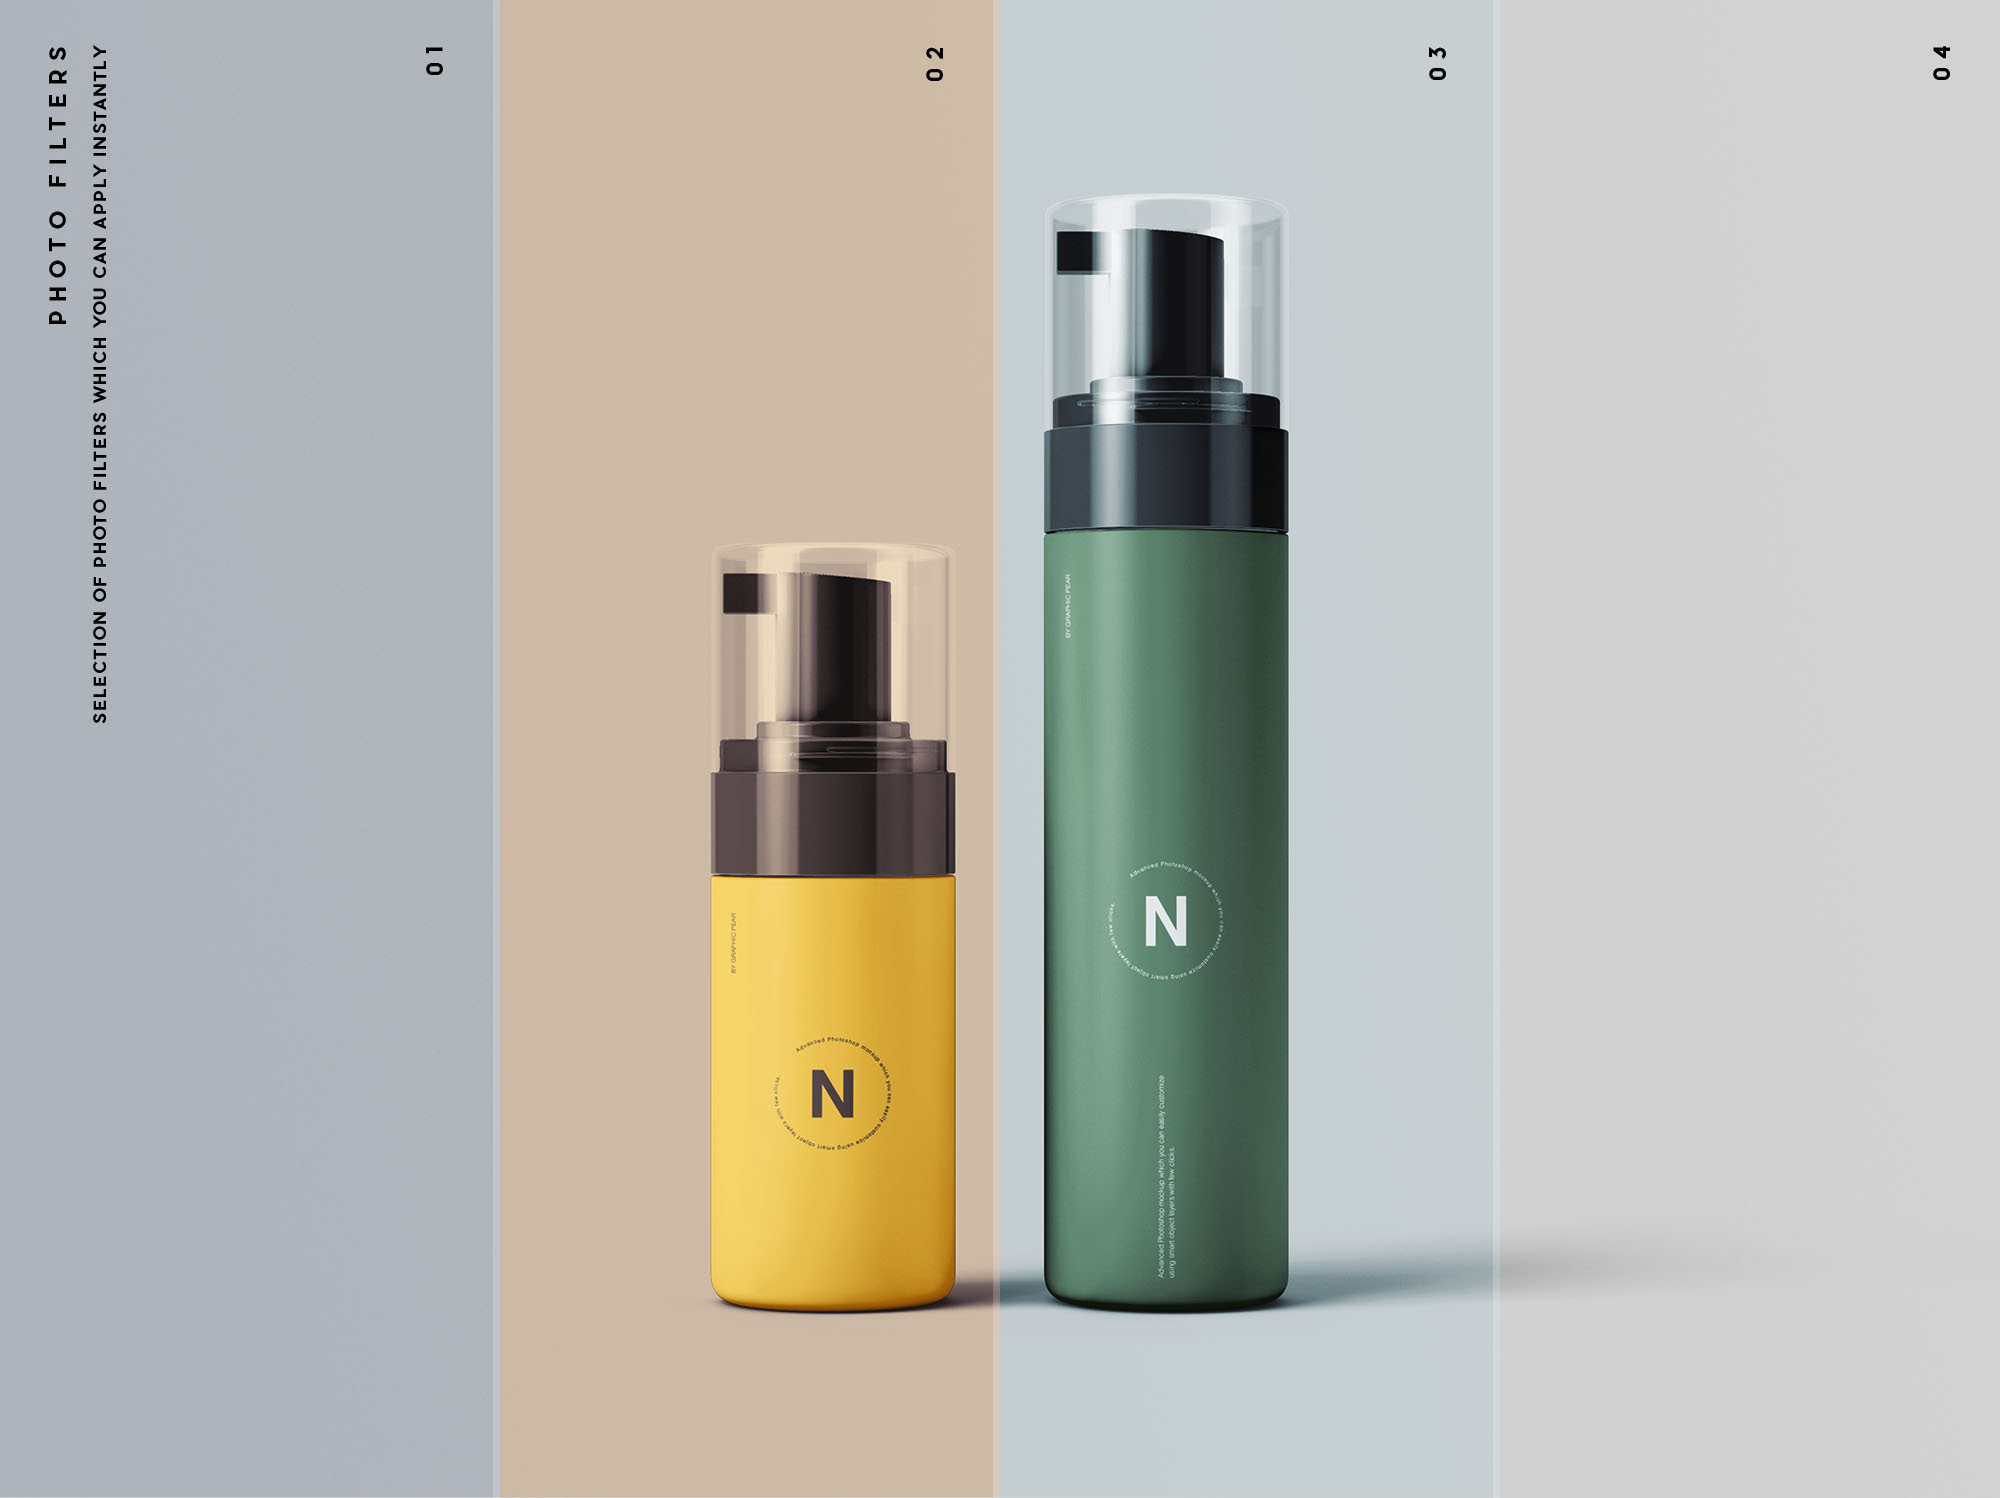 按压式化妆品护肤品瓶外观设计素材库精选模板 Cosmetic Bottles Packaging Mockup插图(10)